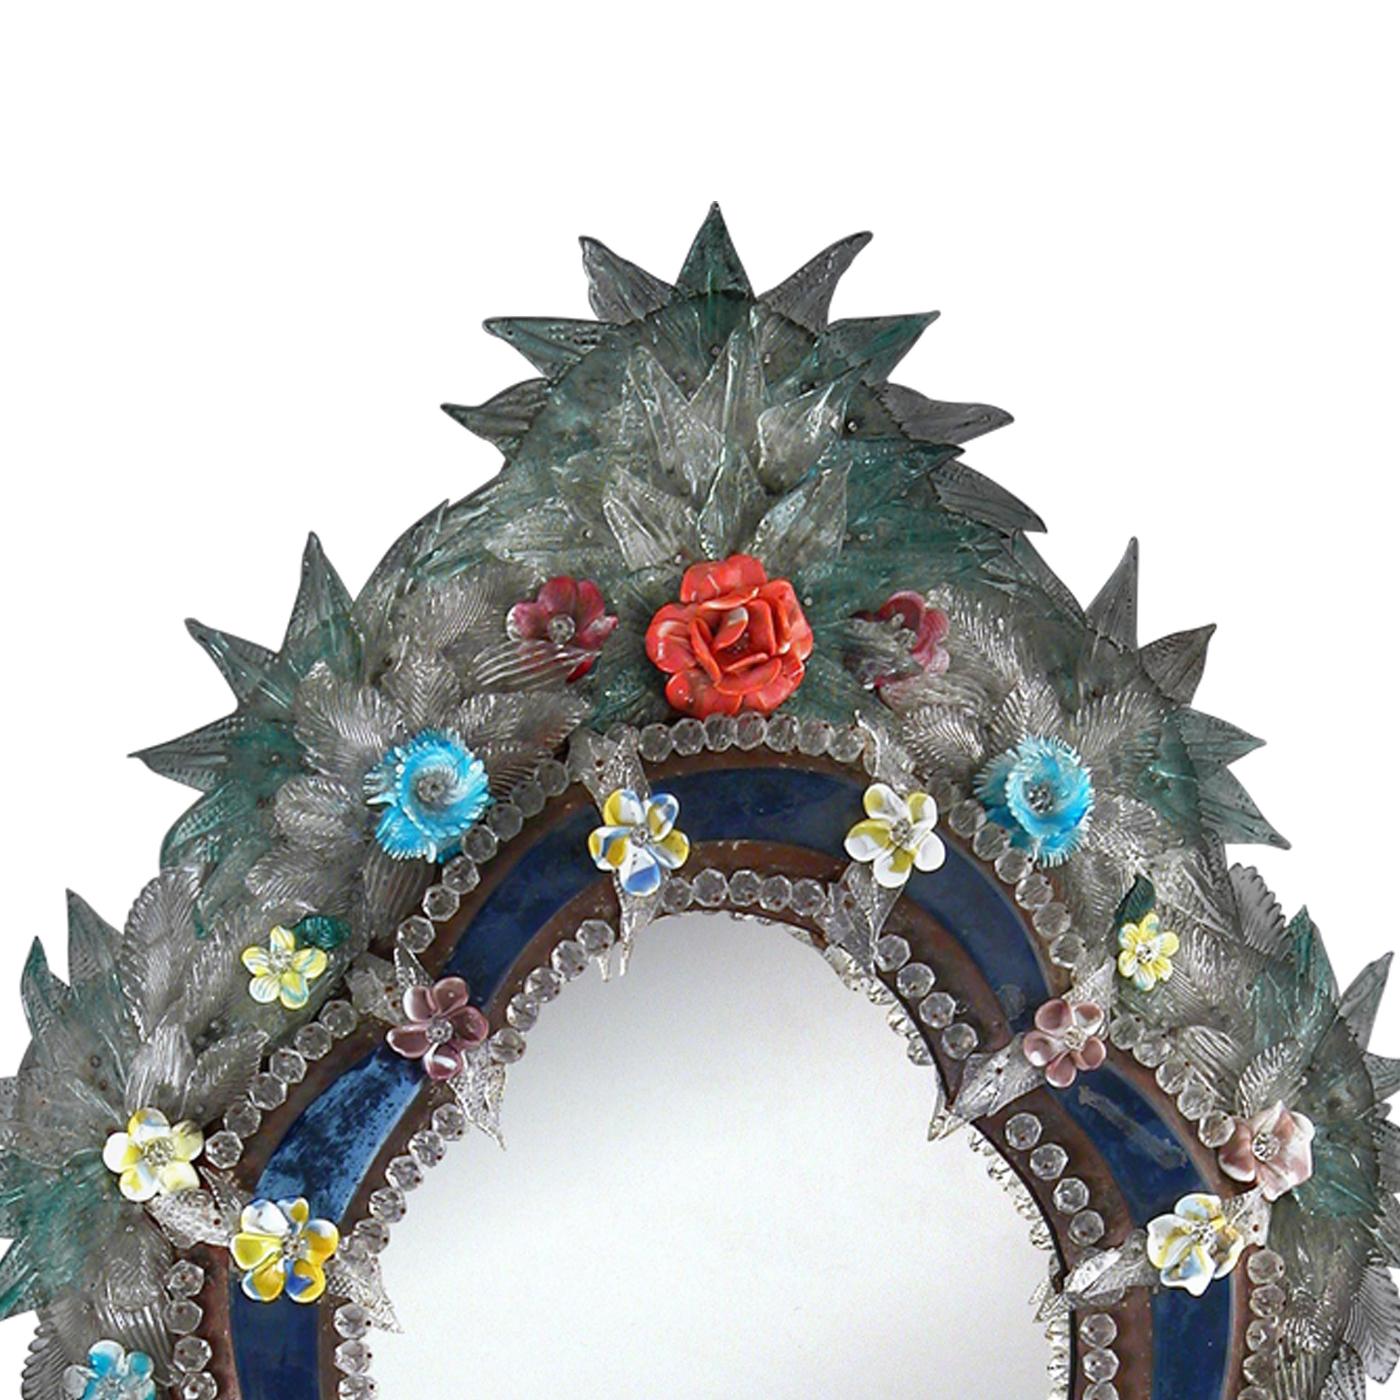 Dieser elegante Spiegel hat ein antikes Finish und einen exquisiten blauen Rahmen aus Muranoglas, der oben und unten mit handgefertigten, lebhaften grünen Blättern und mehrfarbigen Blumen verziert ist.